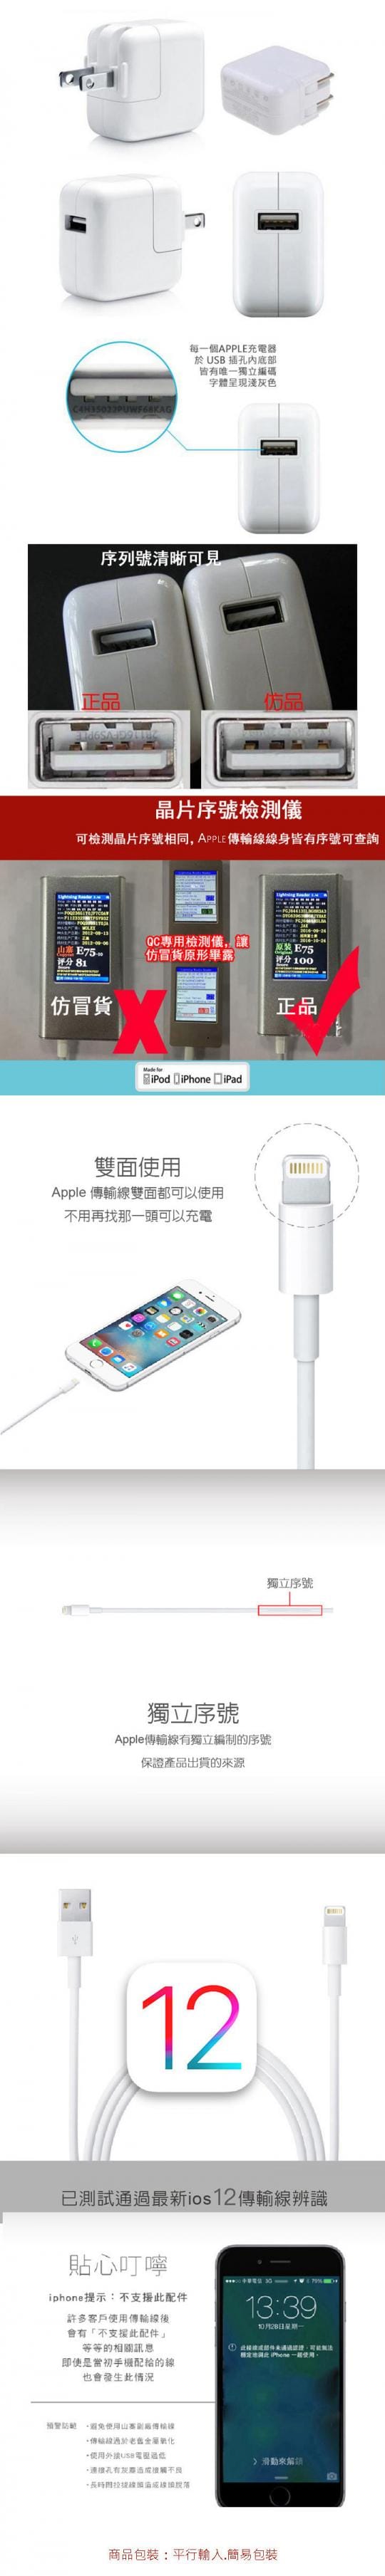 Apple Iphone 10w充電線 生活市集